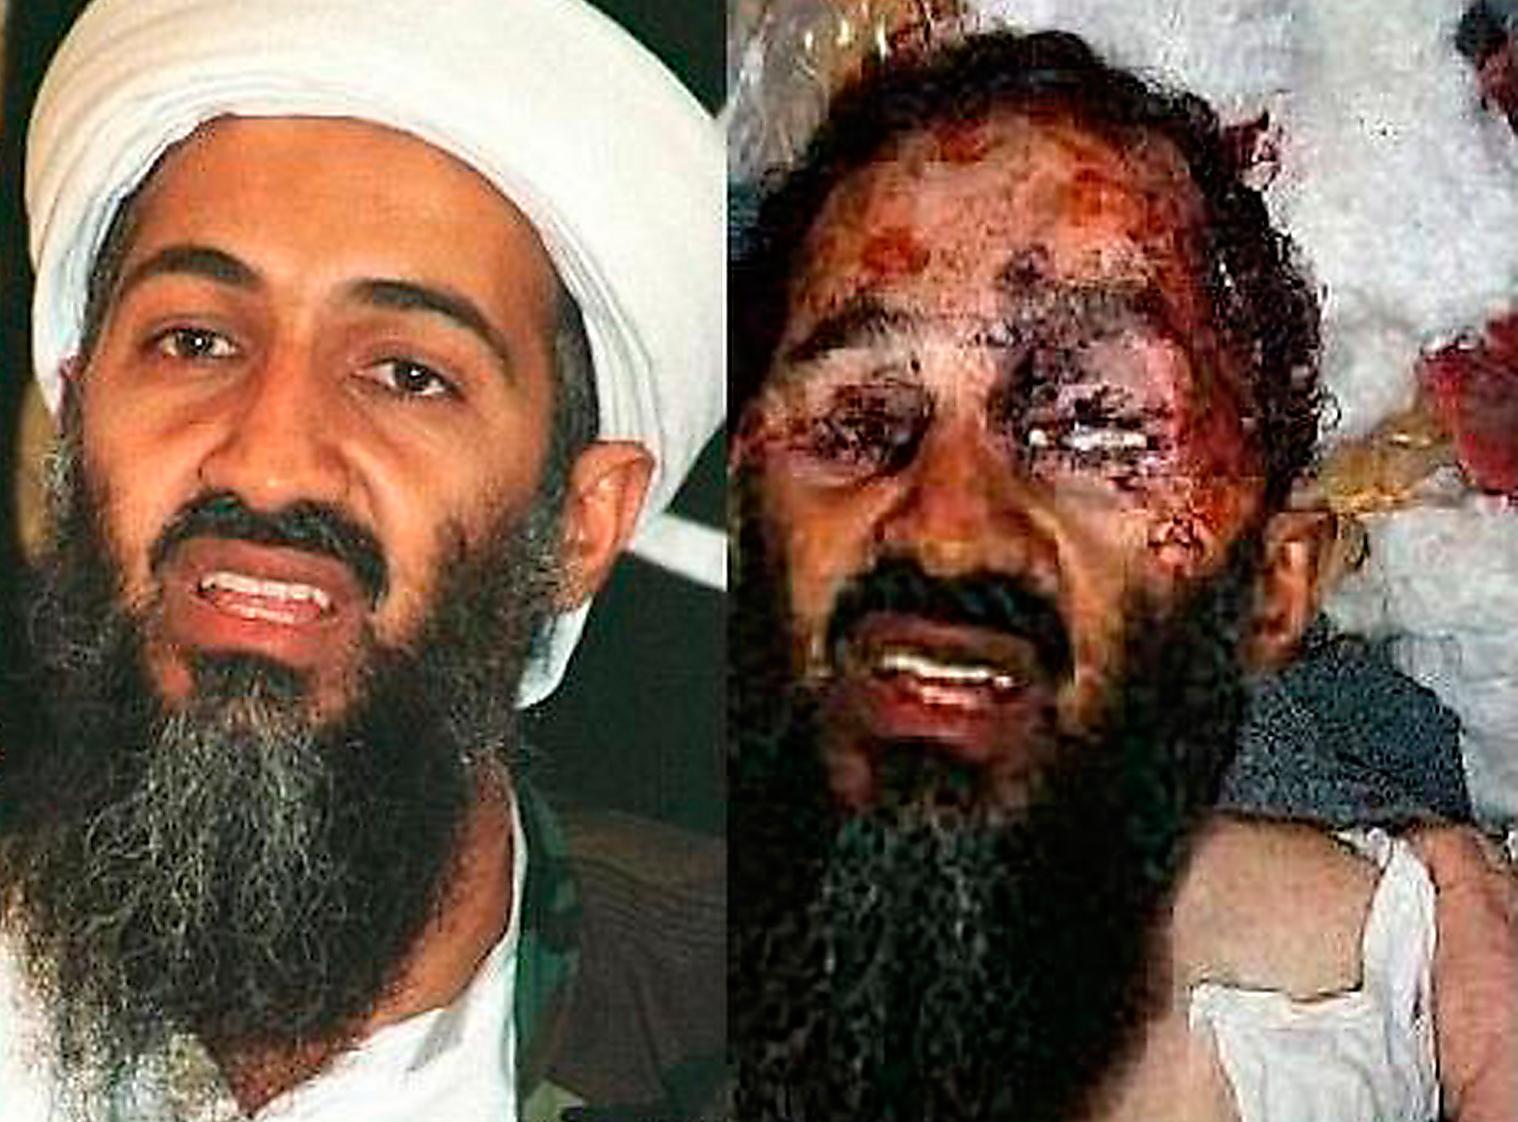 Det är inte bin Ladin på bilden Bilden på den döde al-Qaidaledaren cirkulerade på nyhetsredaktioner världen runt bara timmar efter attacken – men bilden var falsk. 
Fotot dök upp första gången 2009. Tittar man noga ser man lätt att det är en manipulerad bild, där ett gammalt foto på bin Ladins ansikte lagts in på bilden av en död självmordsbombare.